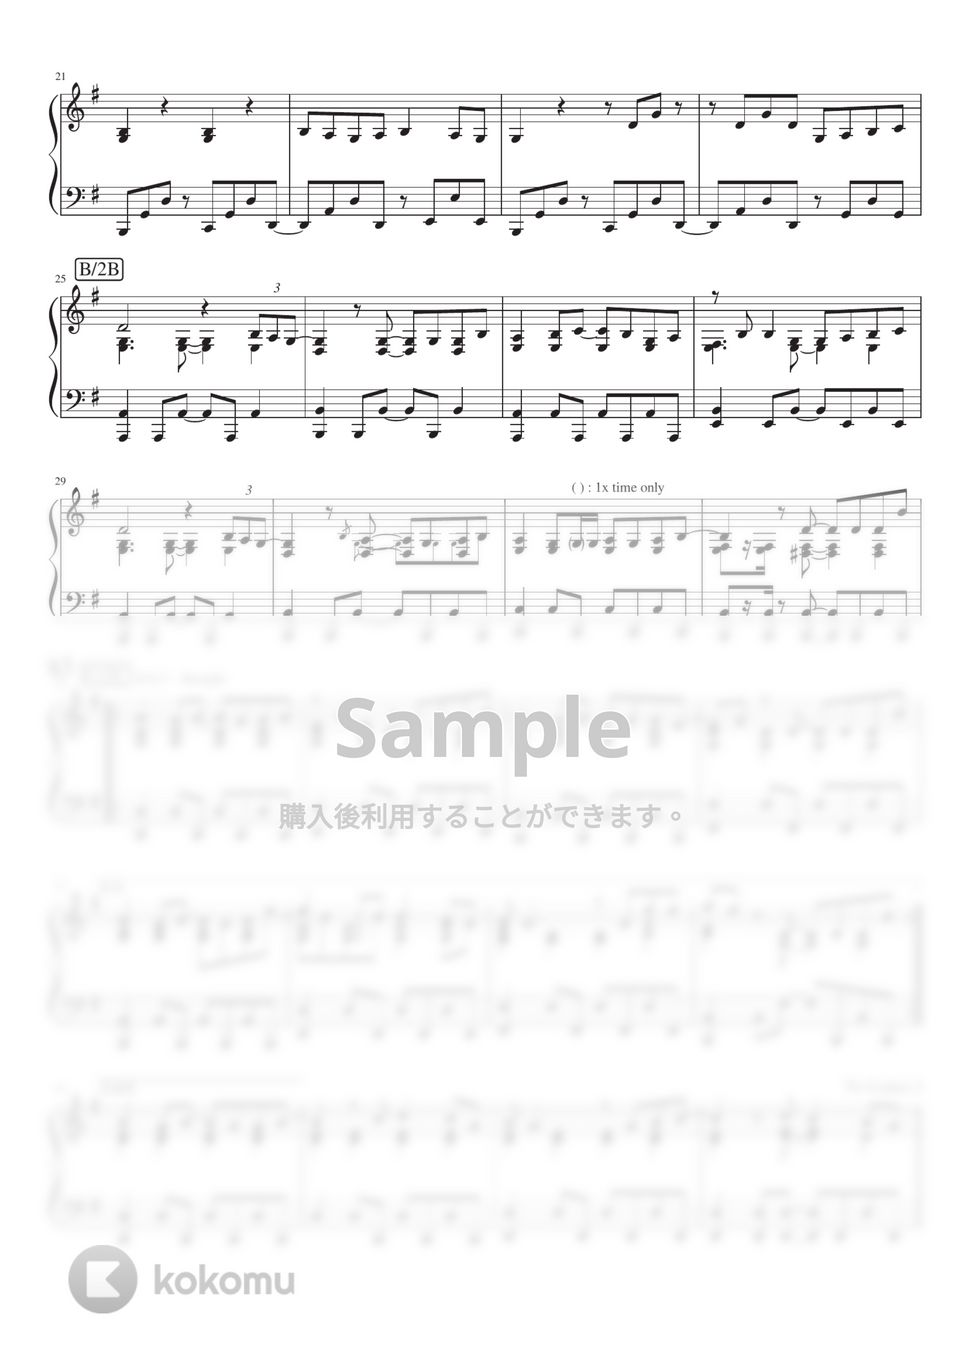 ヨルシカ - 靴の花火 (PianoSolo) by 深根 / Fukane